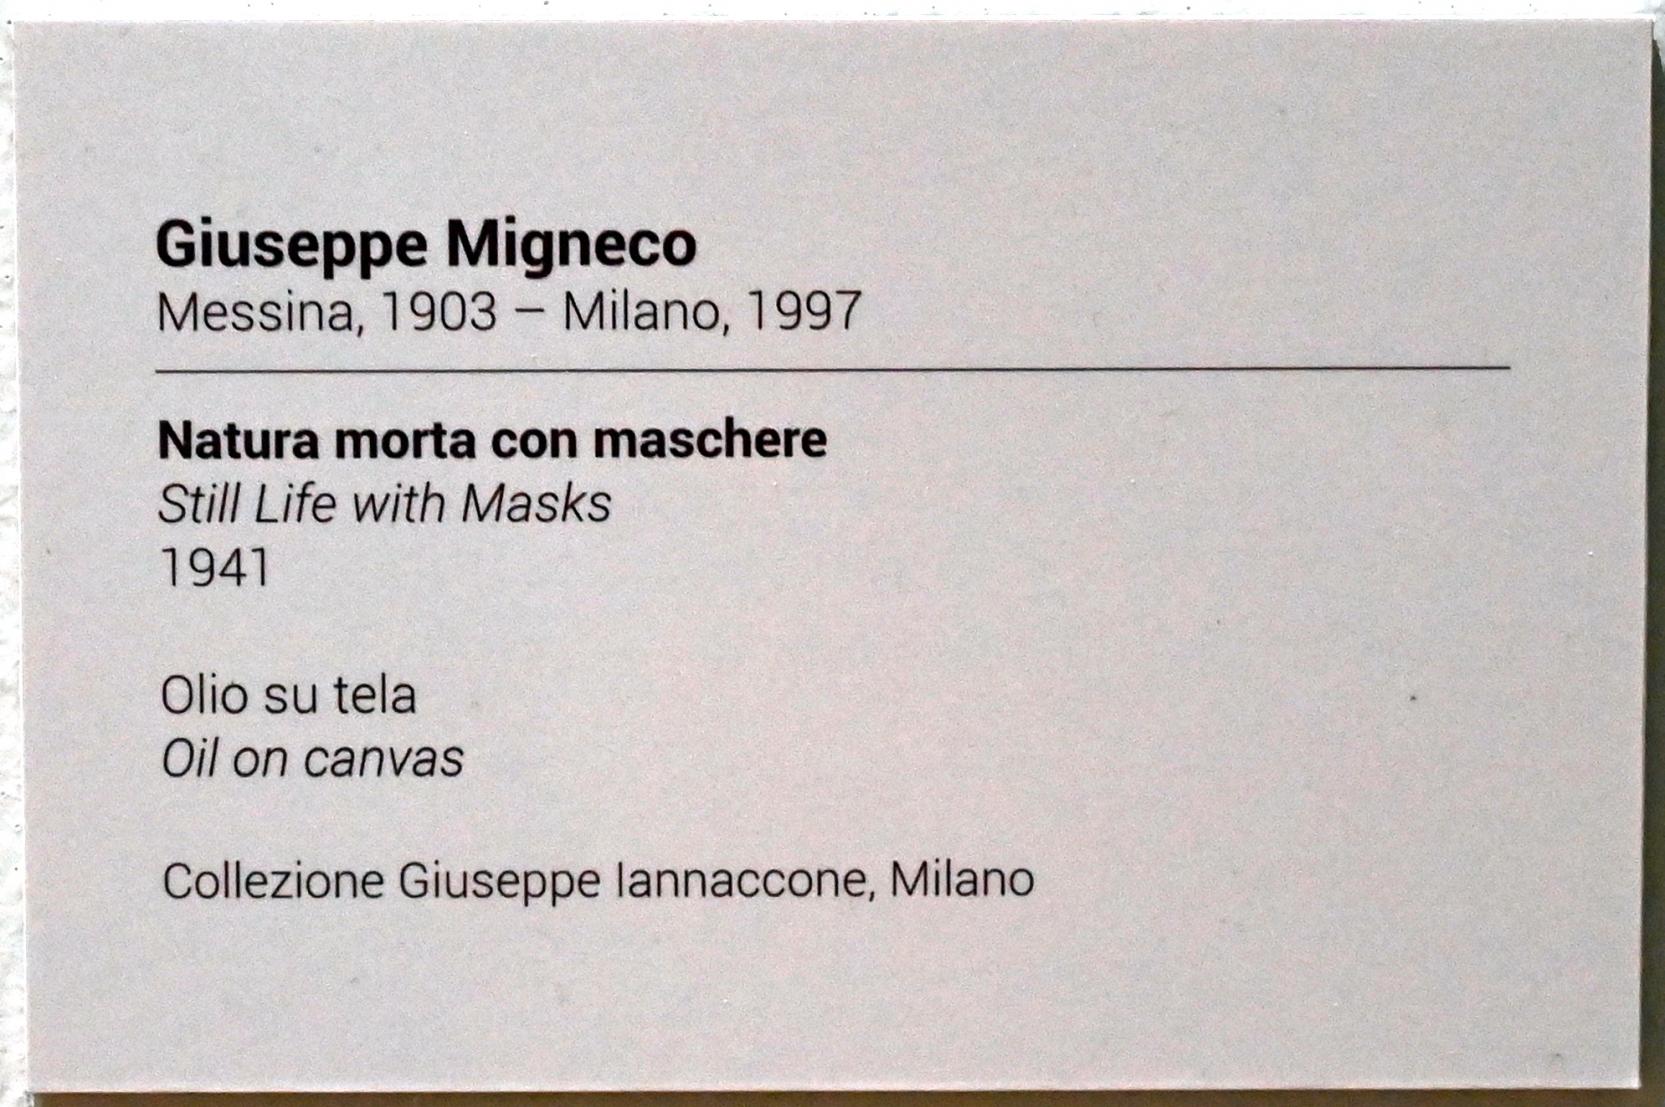 Giuseppe Migneco (1940–1941), Stillleben mit Masken, Turin, GAM Torino, Ausstellung "Eine Reise gegen den Strom" vom 05.05.-12.09.2021, Saal 4, 1941, Bild 2/2